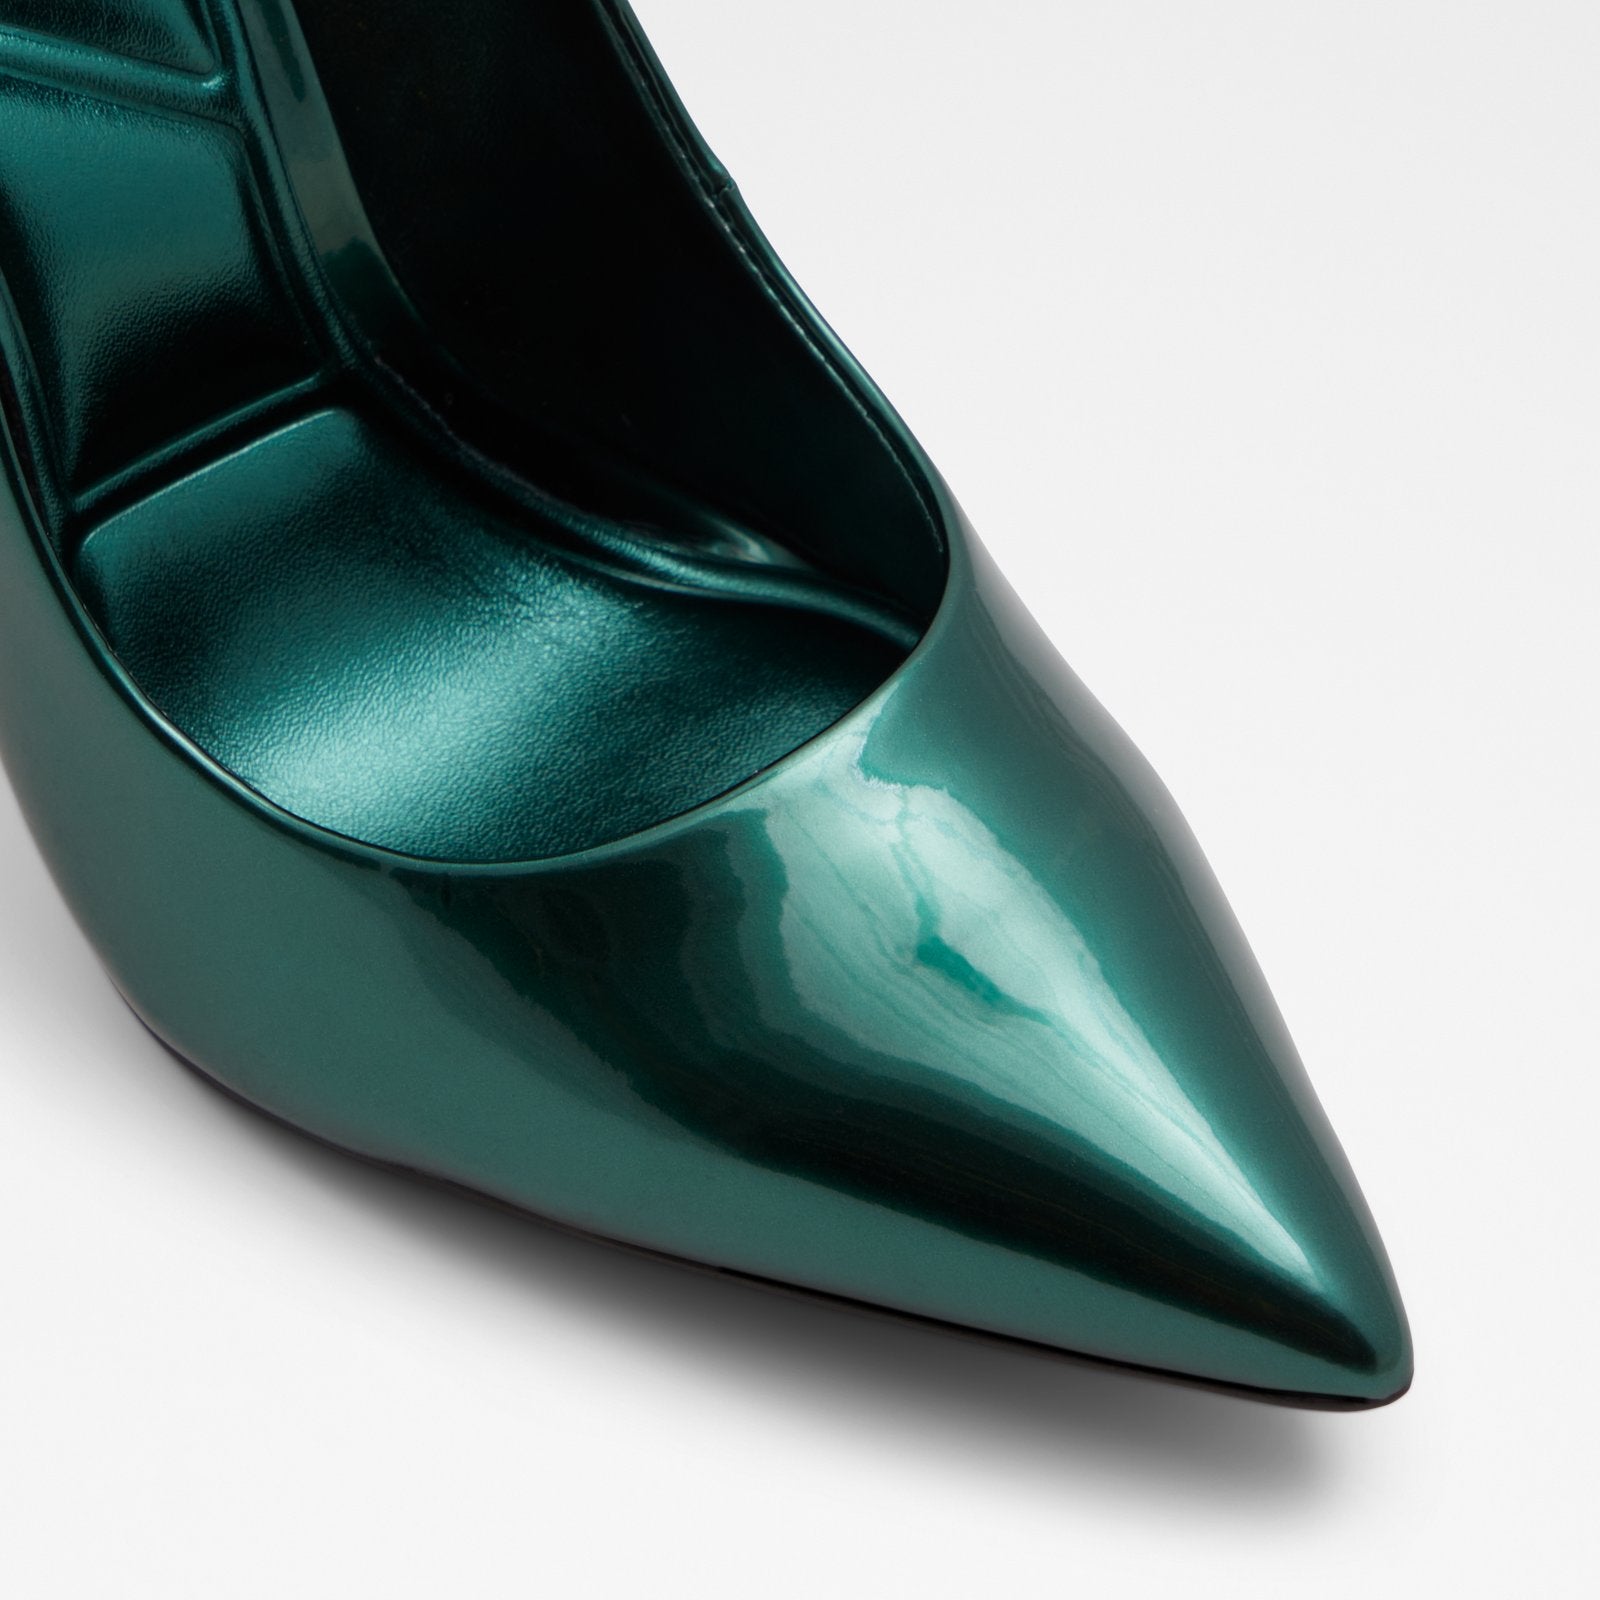 Stessy2.0 Women Shoes - Green - ALDO KSA